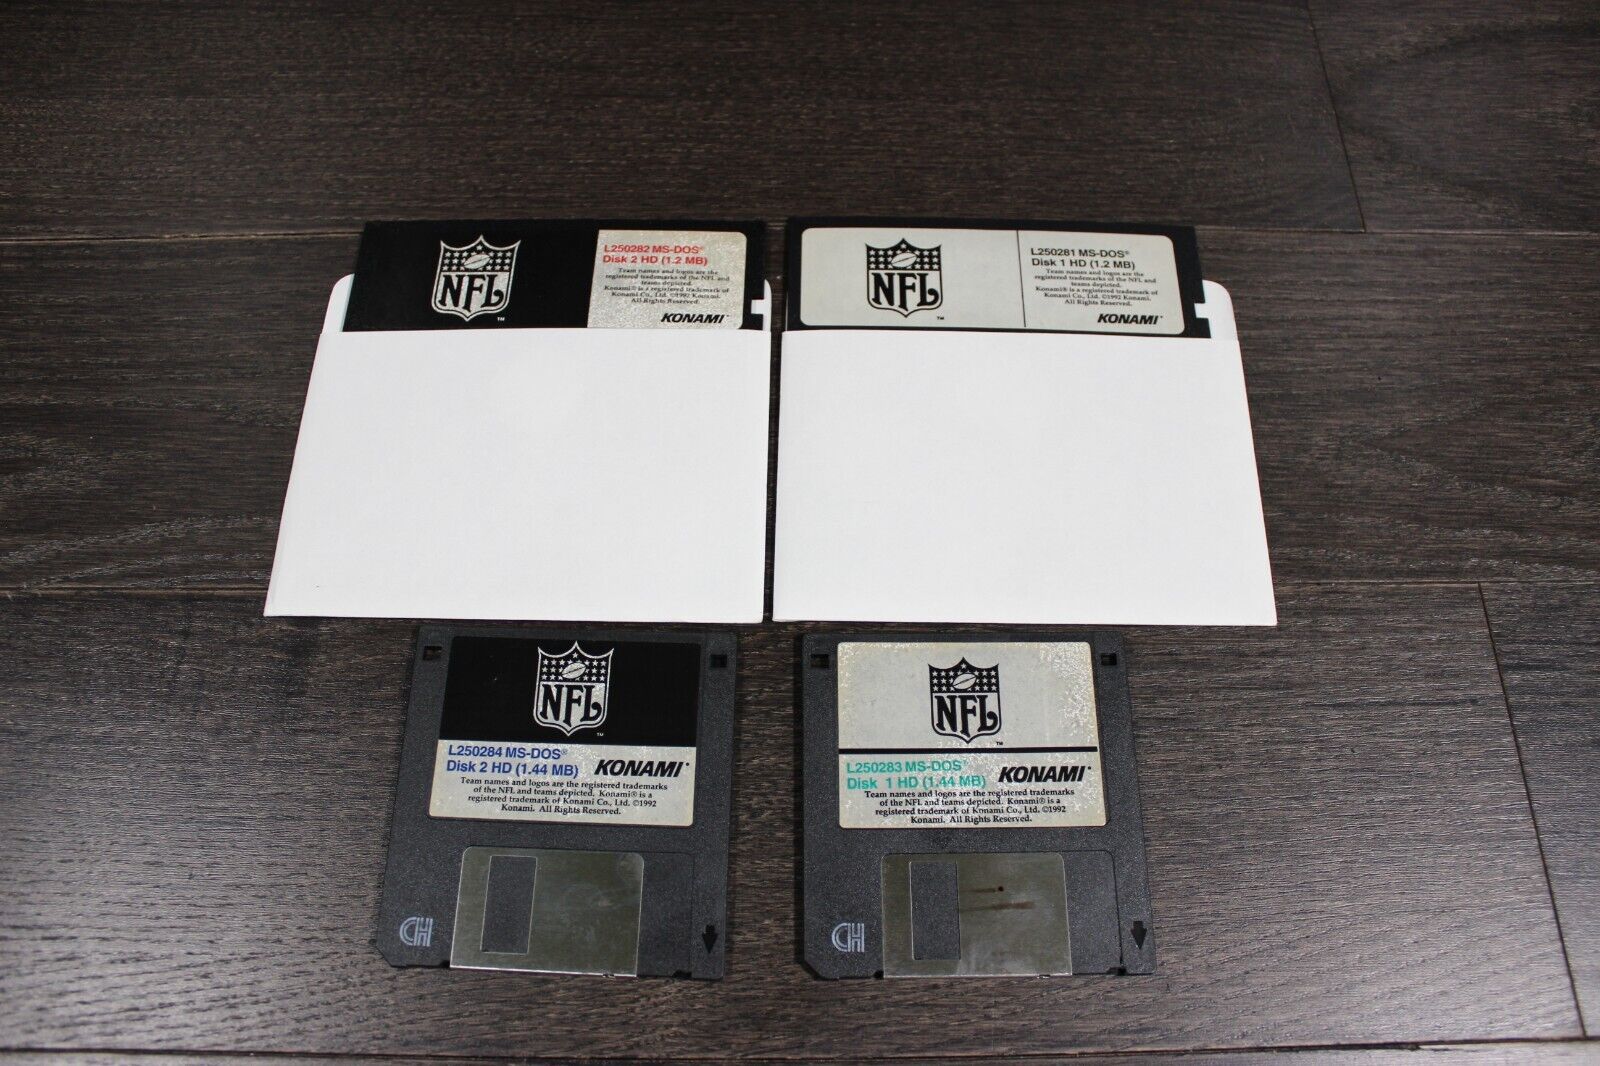 VTG NFL 3.5 & 5.25 Floppy Disk Games For MS-DOS 